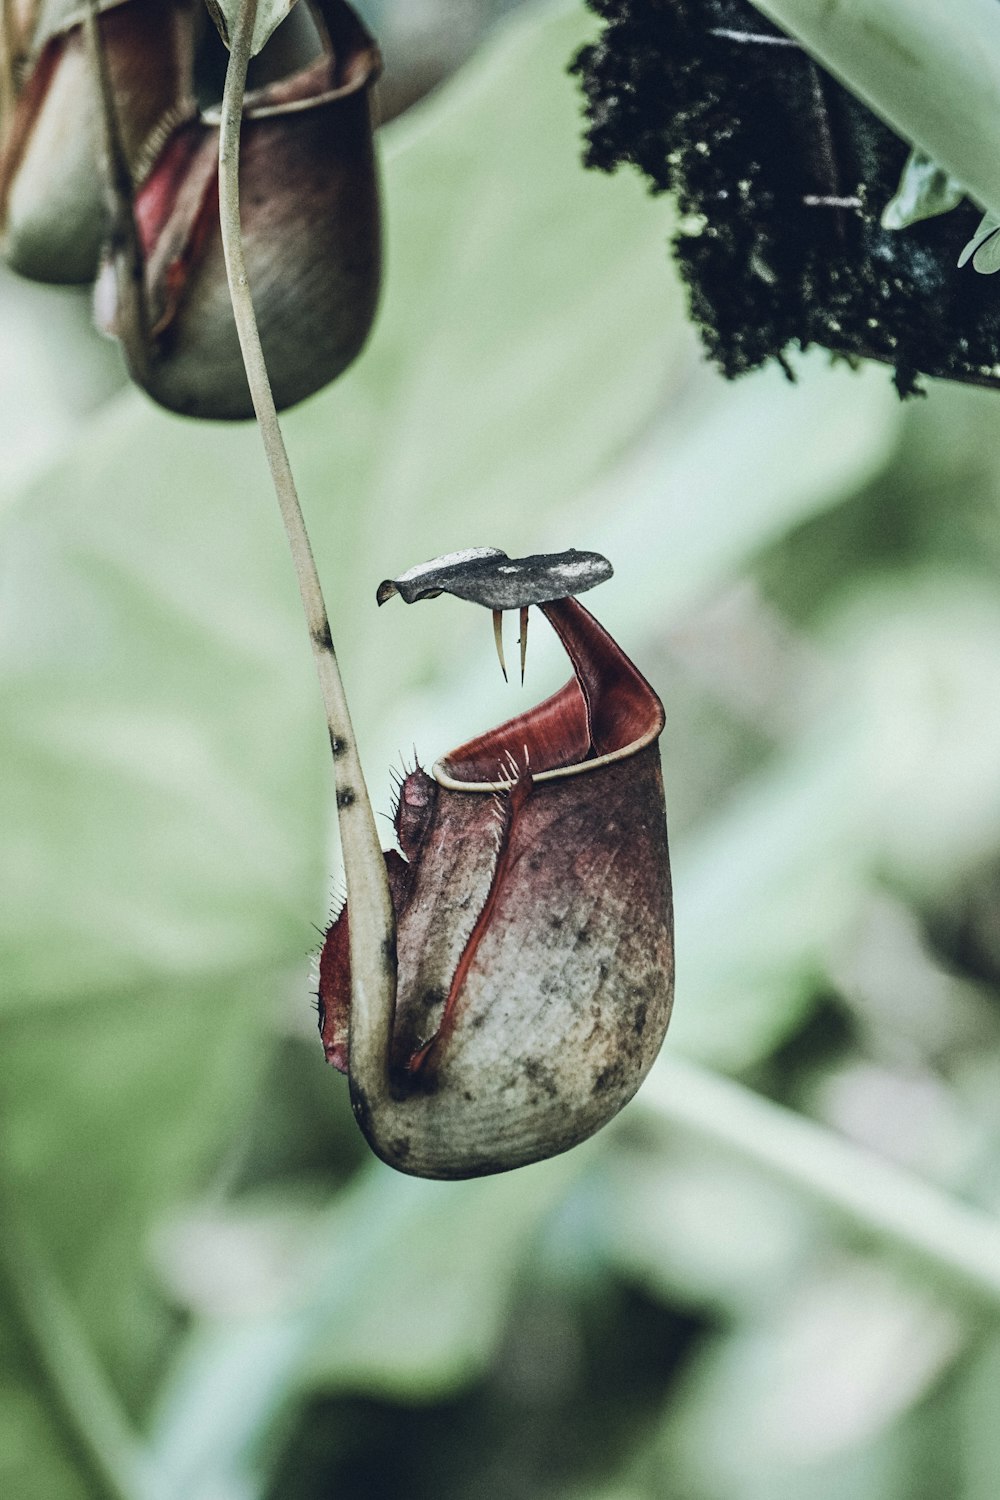 a bug on a plant